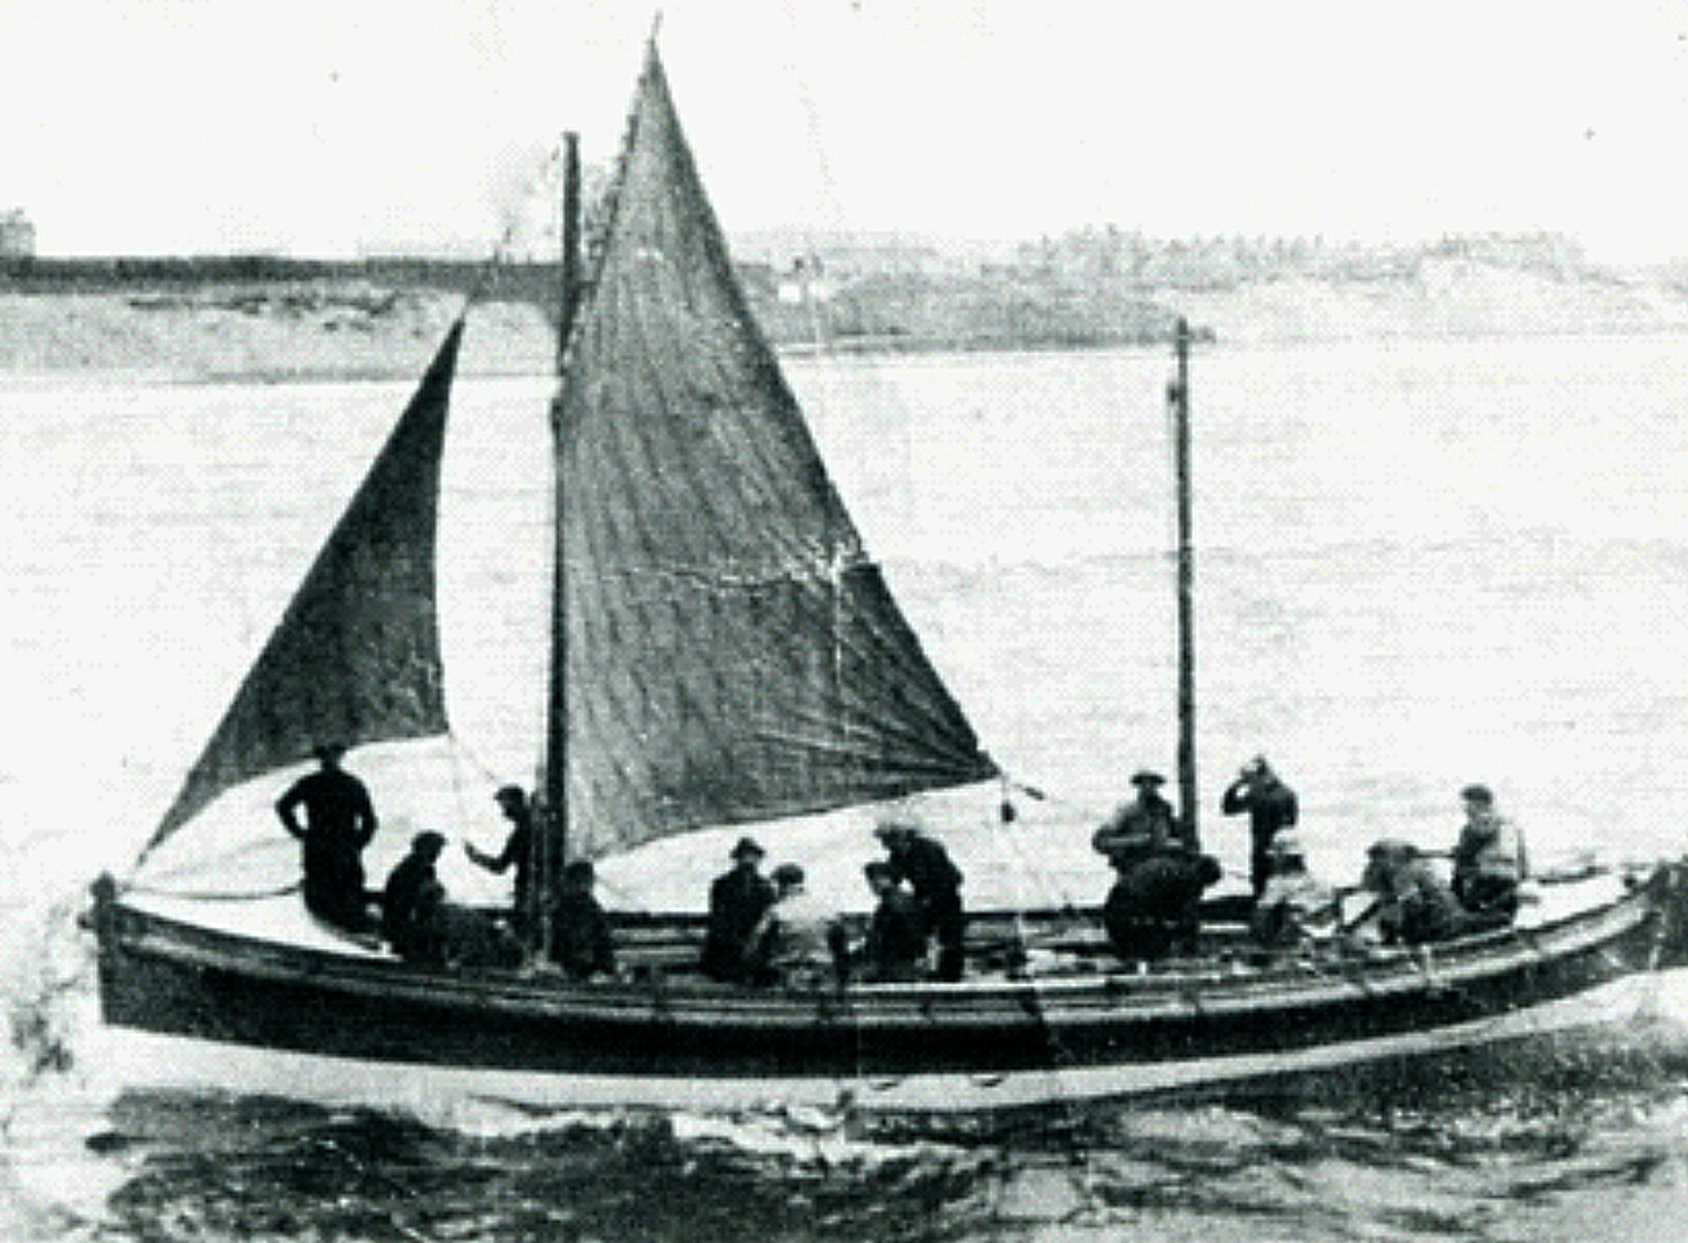 Hopwood at sea